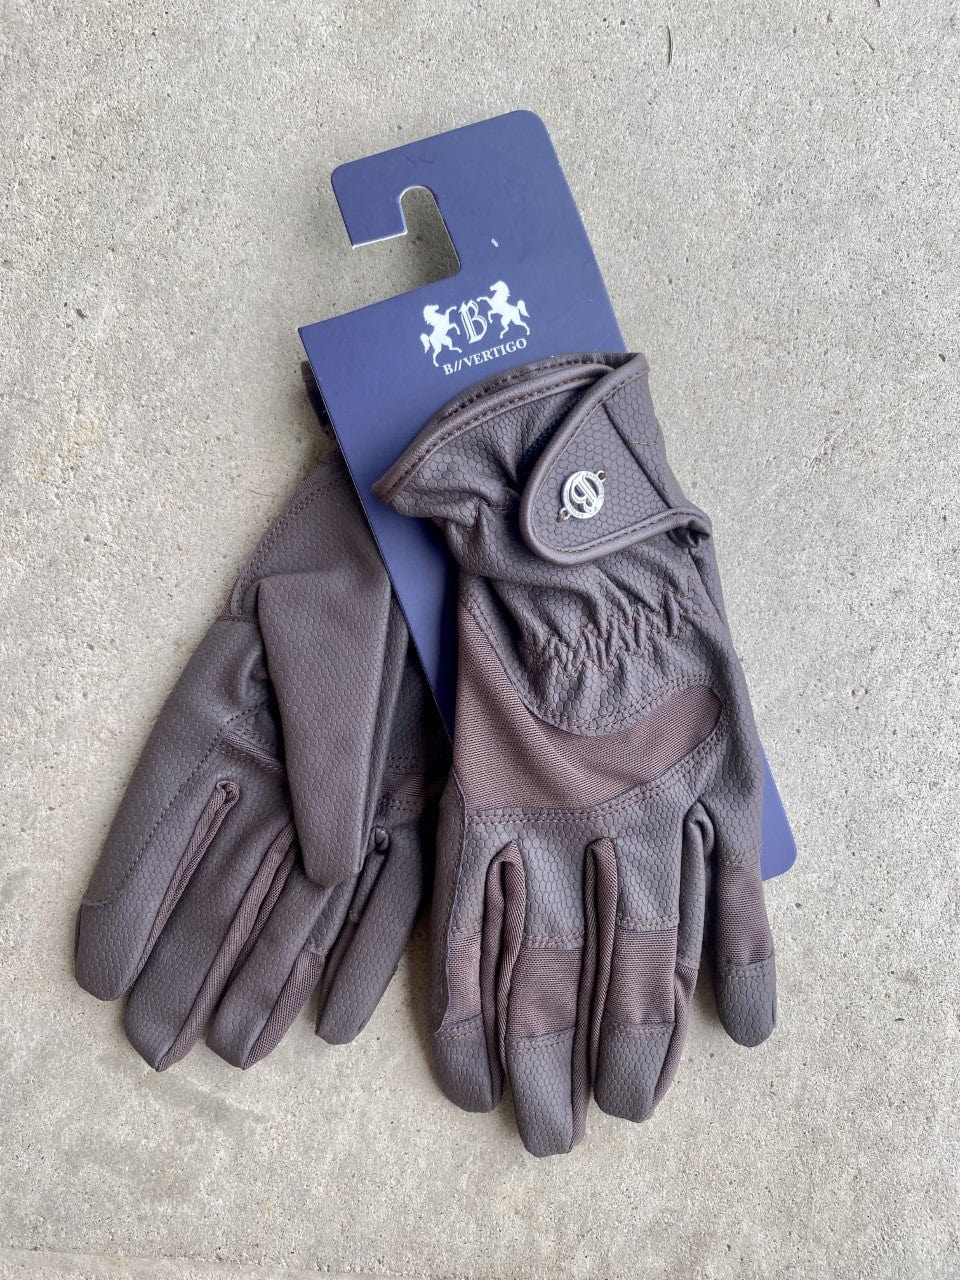 B Vertigo Gloves B-Vertigo Flex Gloves (31679)